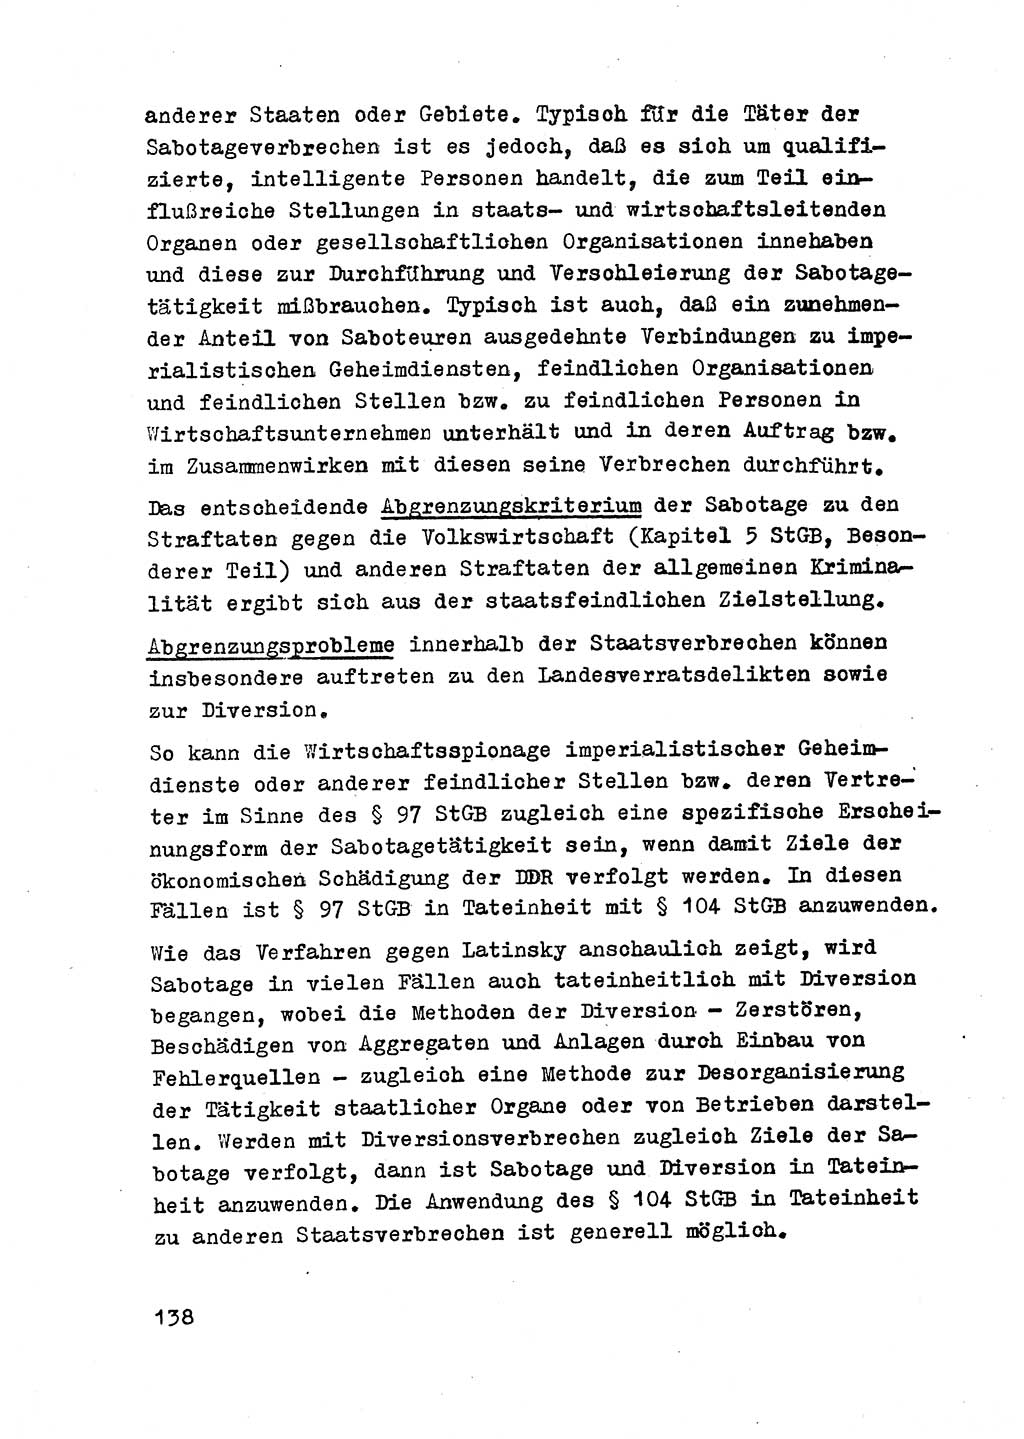 Strafrecht der DDR (Deutsche Demokratische Republik), Besonderer Teil, Lehrmaterial, Heft 2 1969, Seite 138 (Strafr. DDR BT Lehrmat. H. 2 1969, S. 138)